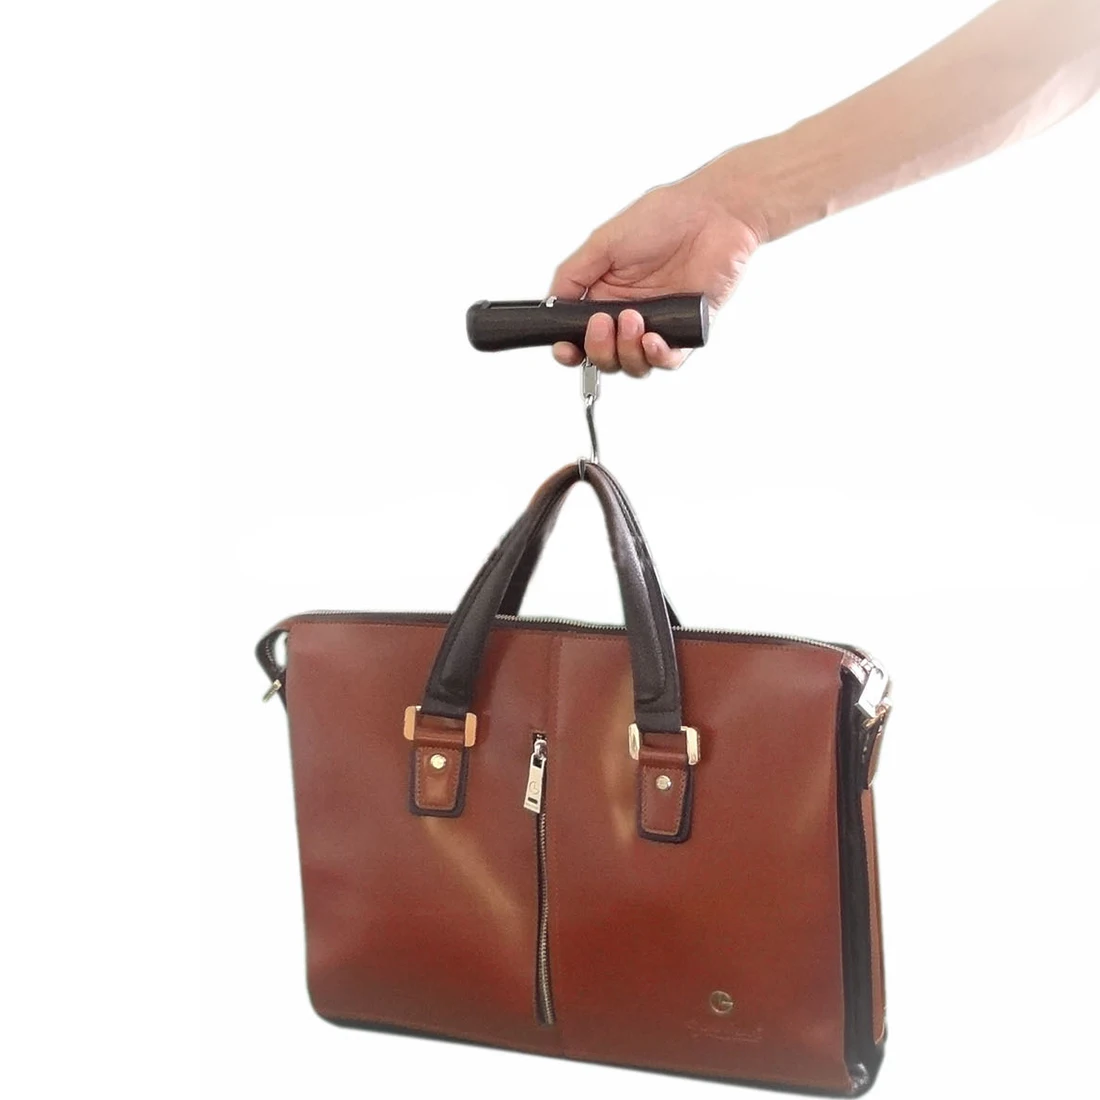 1 шт. Высокое качество ЖК дисплей подсветкой 40 кг путешествия портативный чемодан сумка вес цифровой весом крюк весы